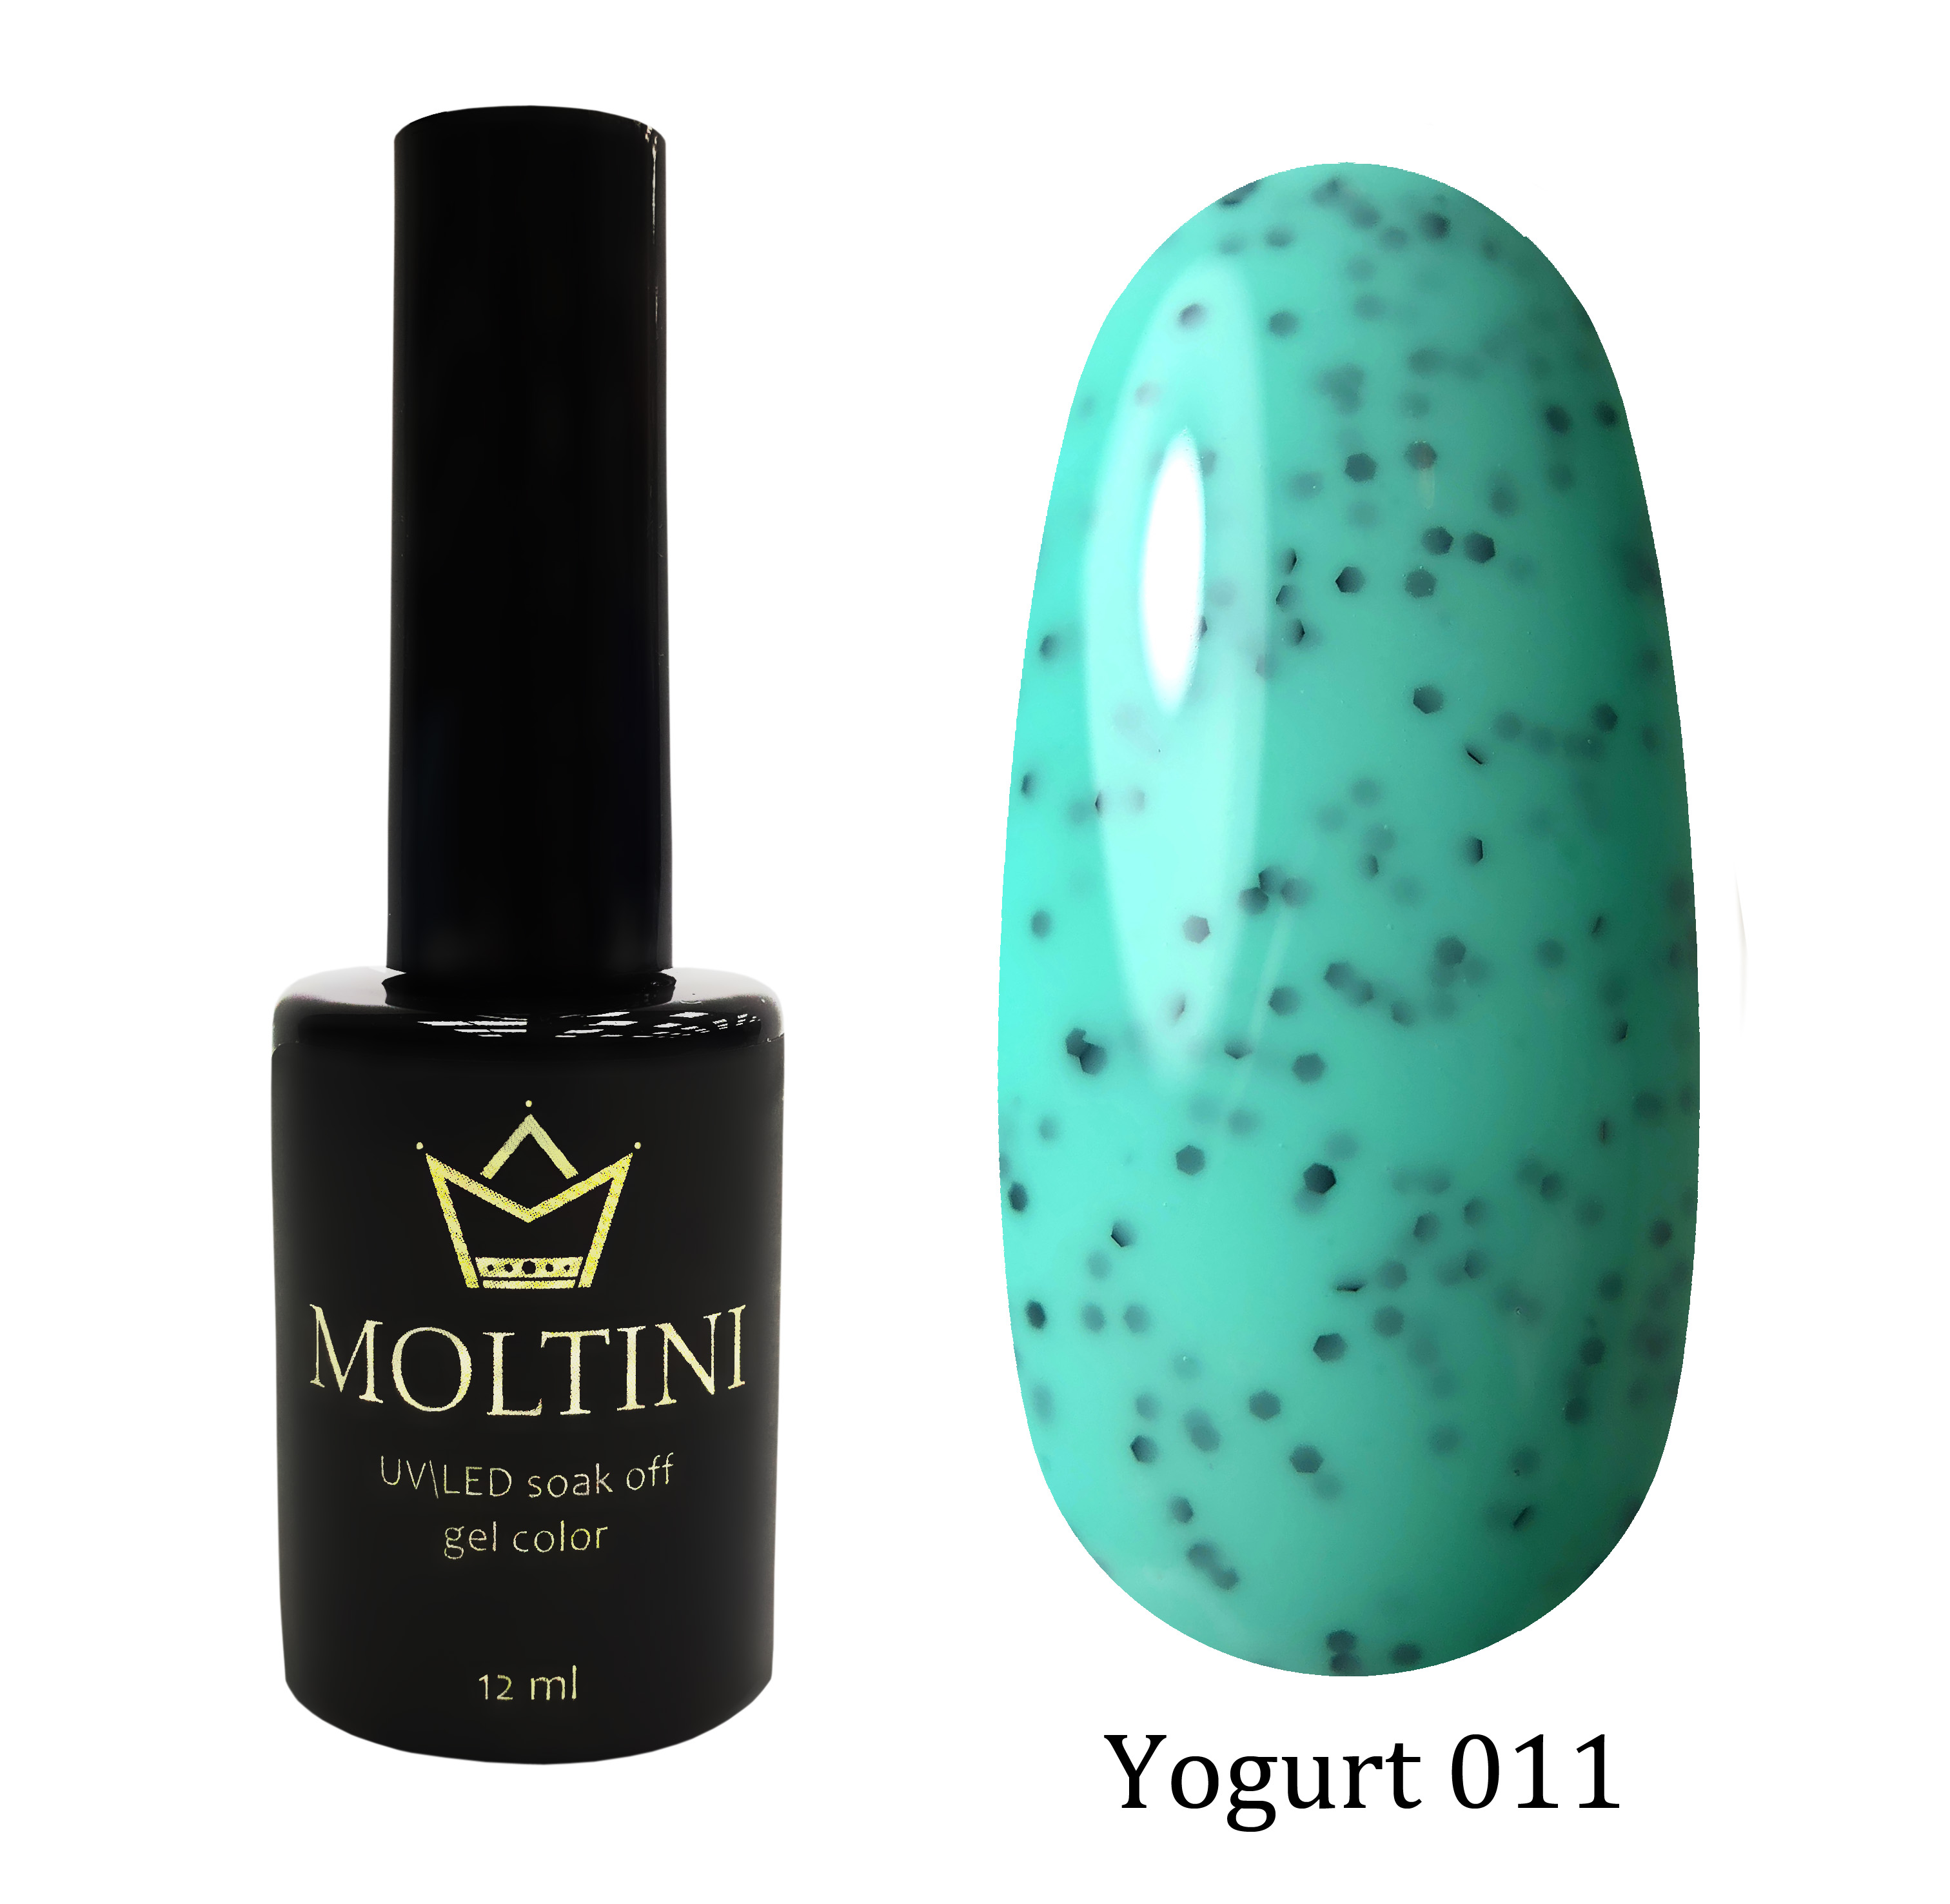 Moltini цветной гель-лак Yogurt 011, 12 мл